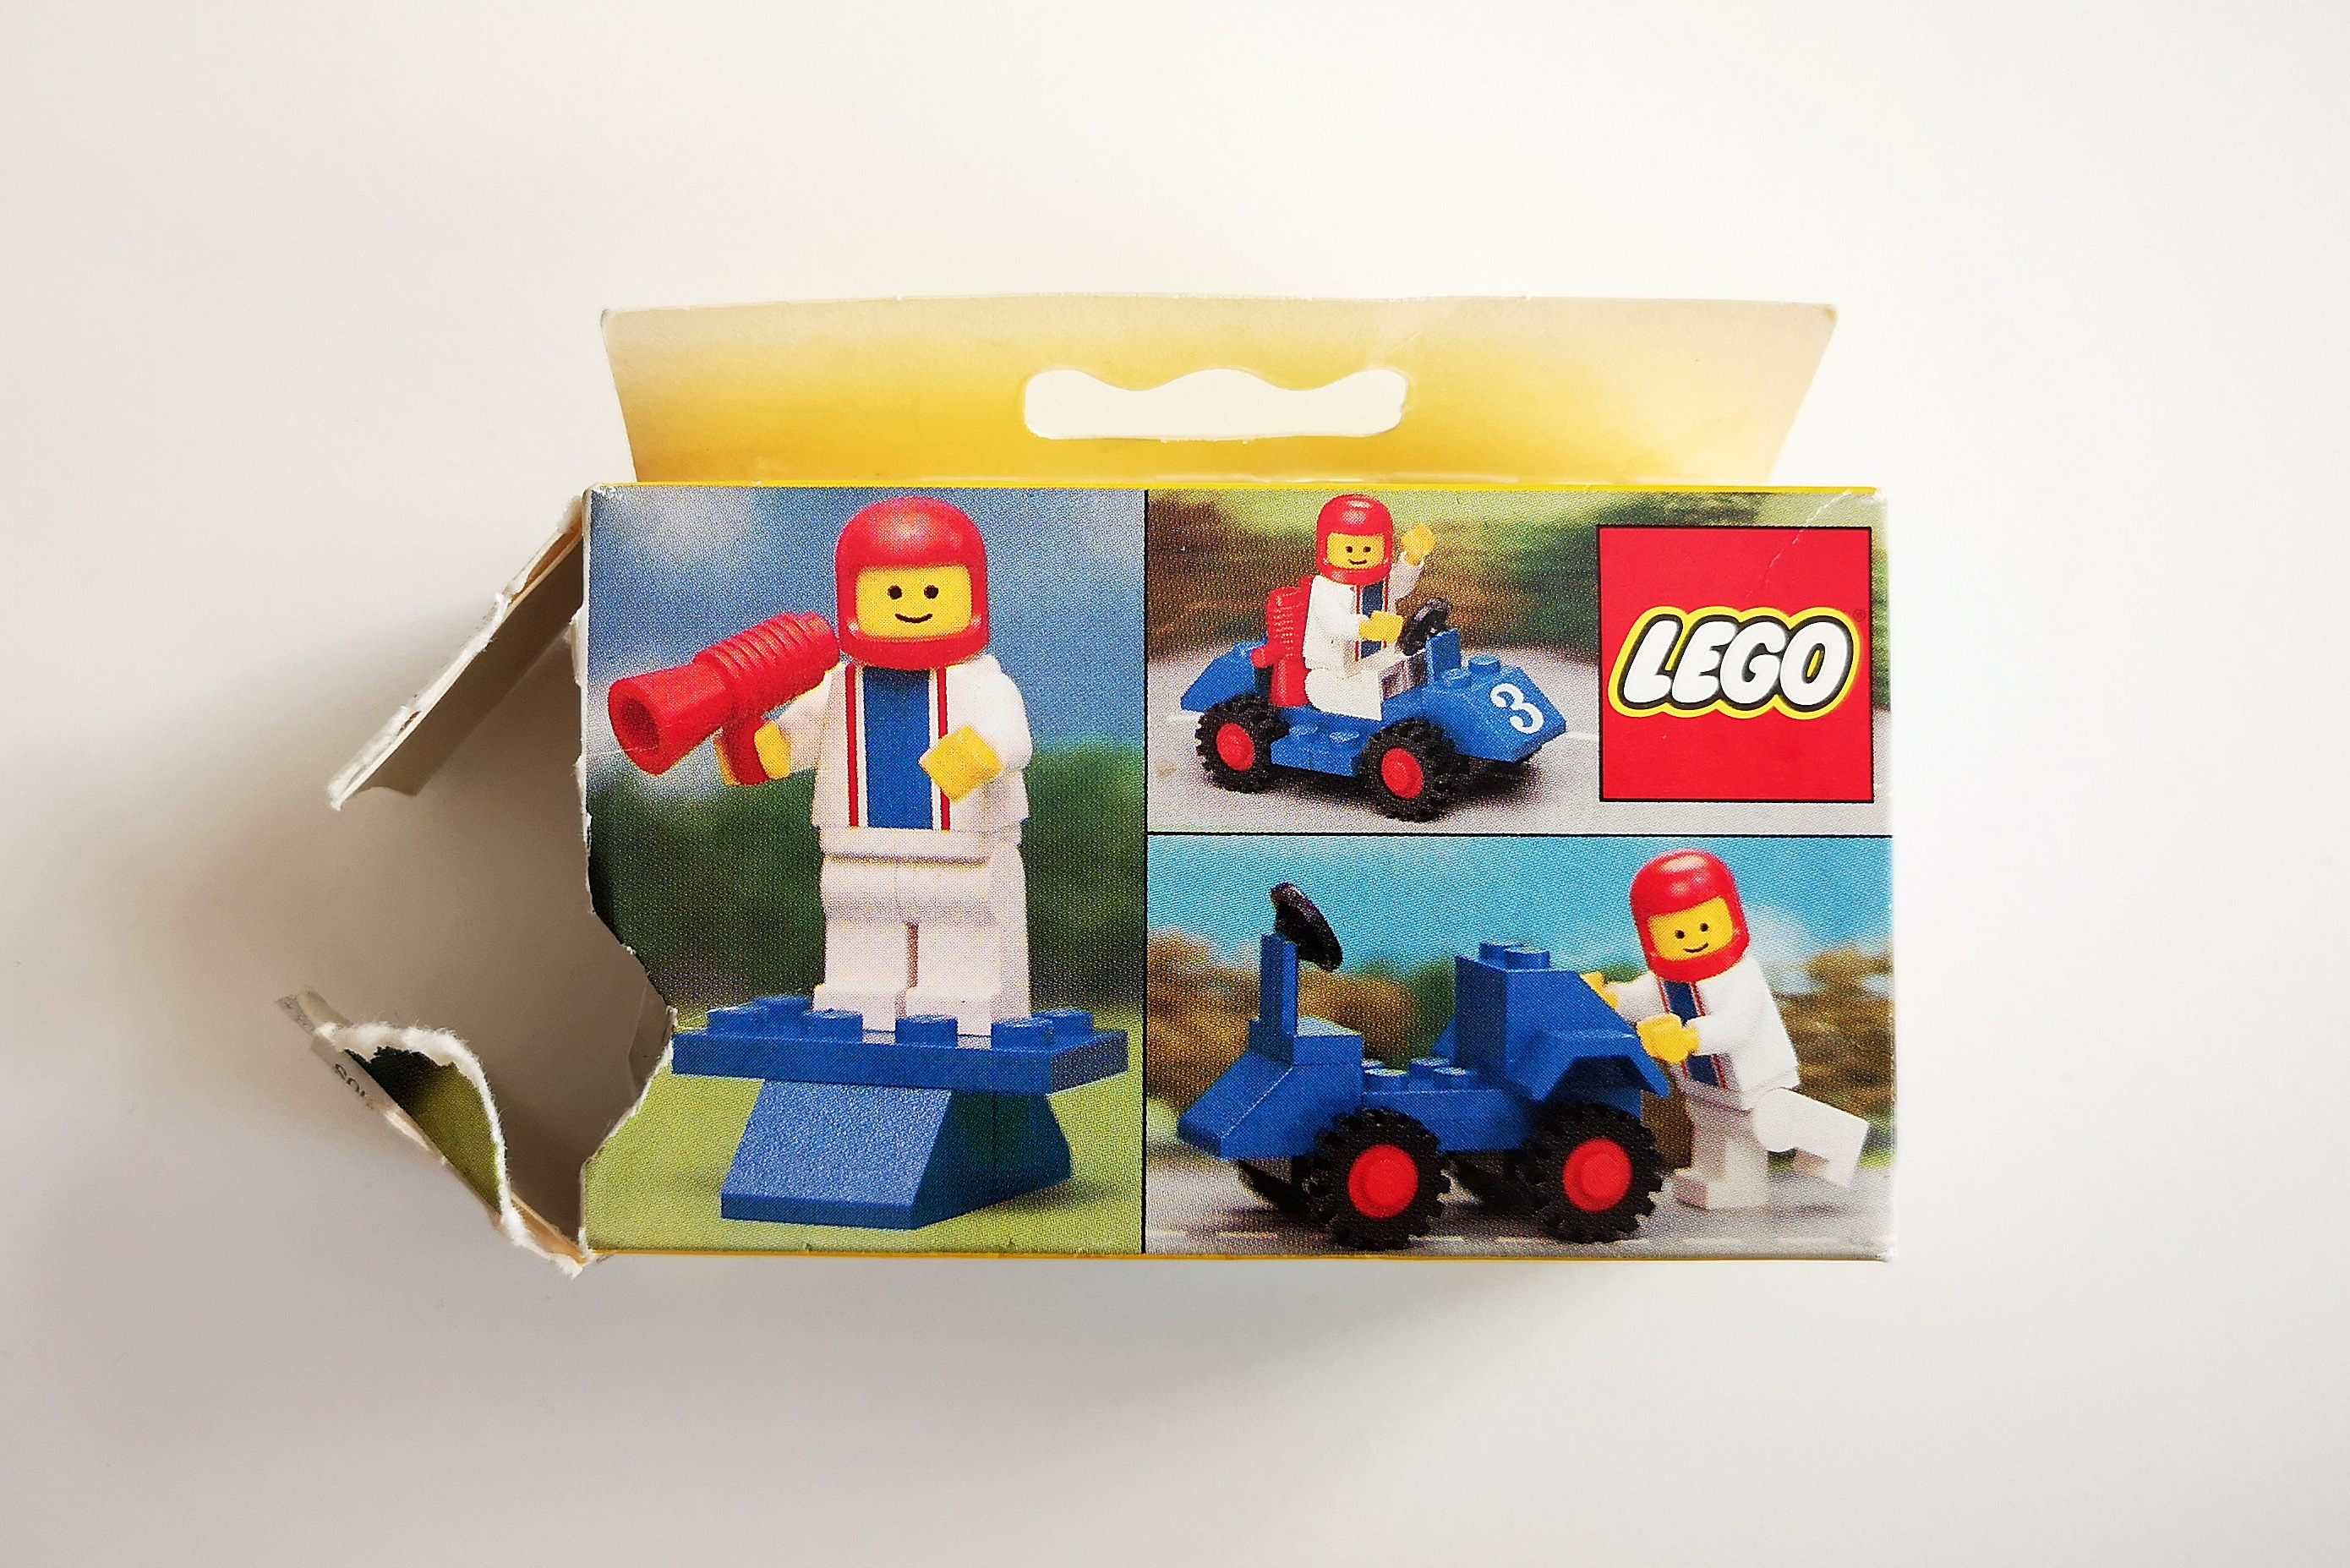 LEGO Review 6605 Box Backsite